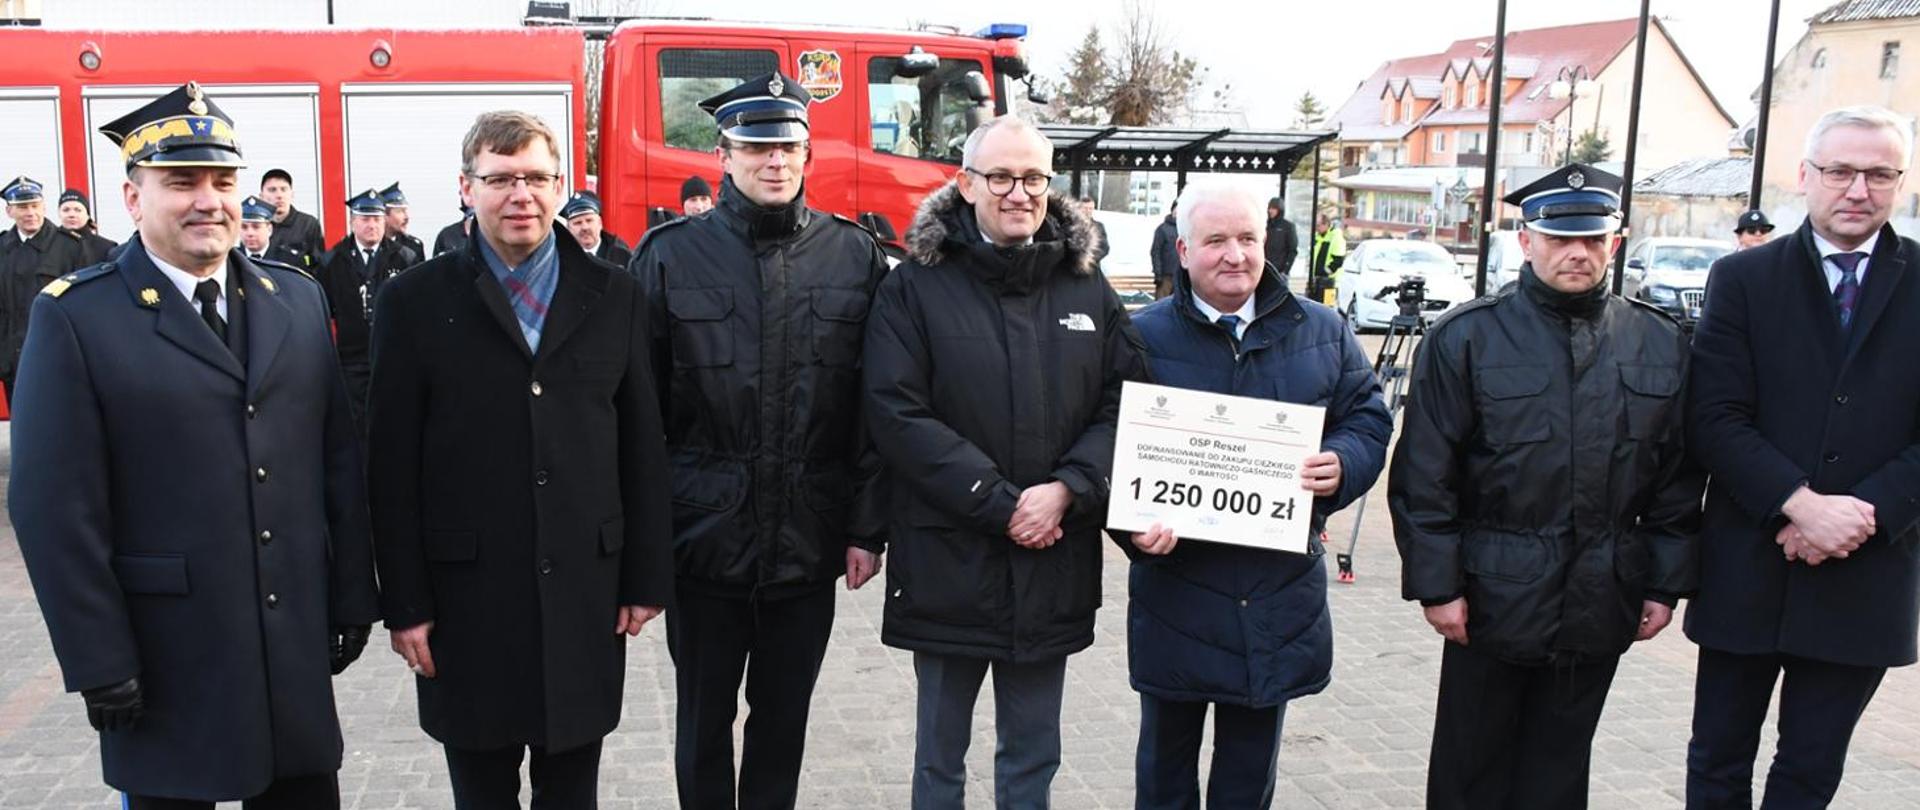 Pierwsze promesy na zakup nowych samochodów pożarniczych trafiły do jednostek OSP na Warmii i Mazurach. 